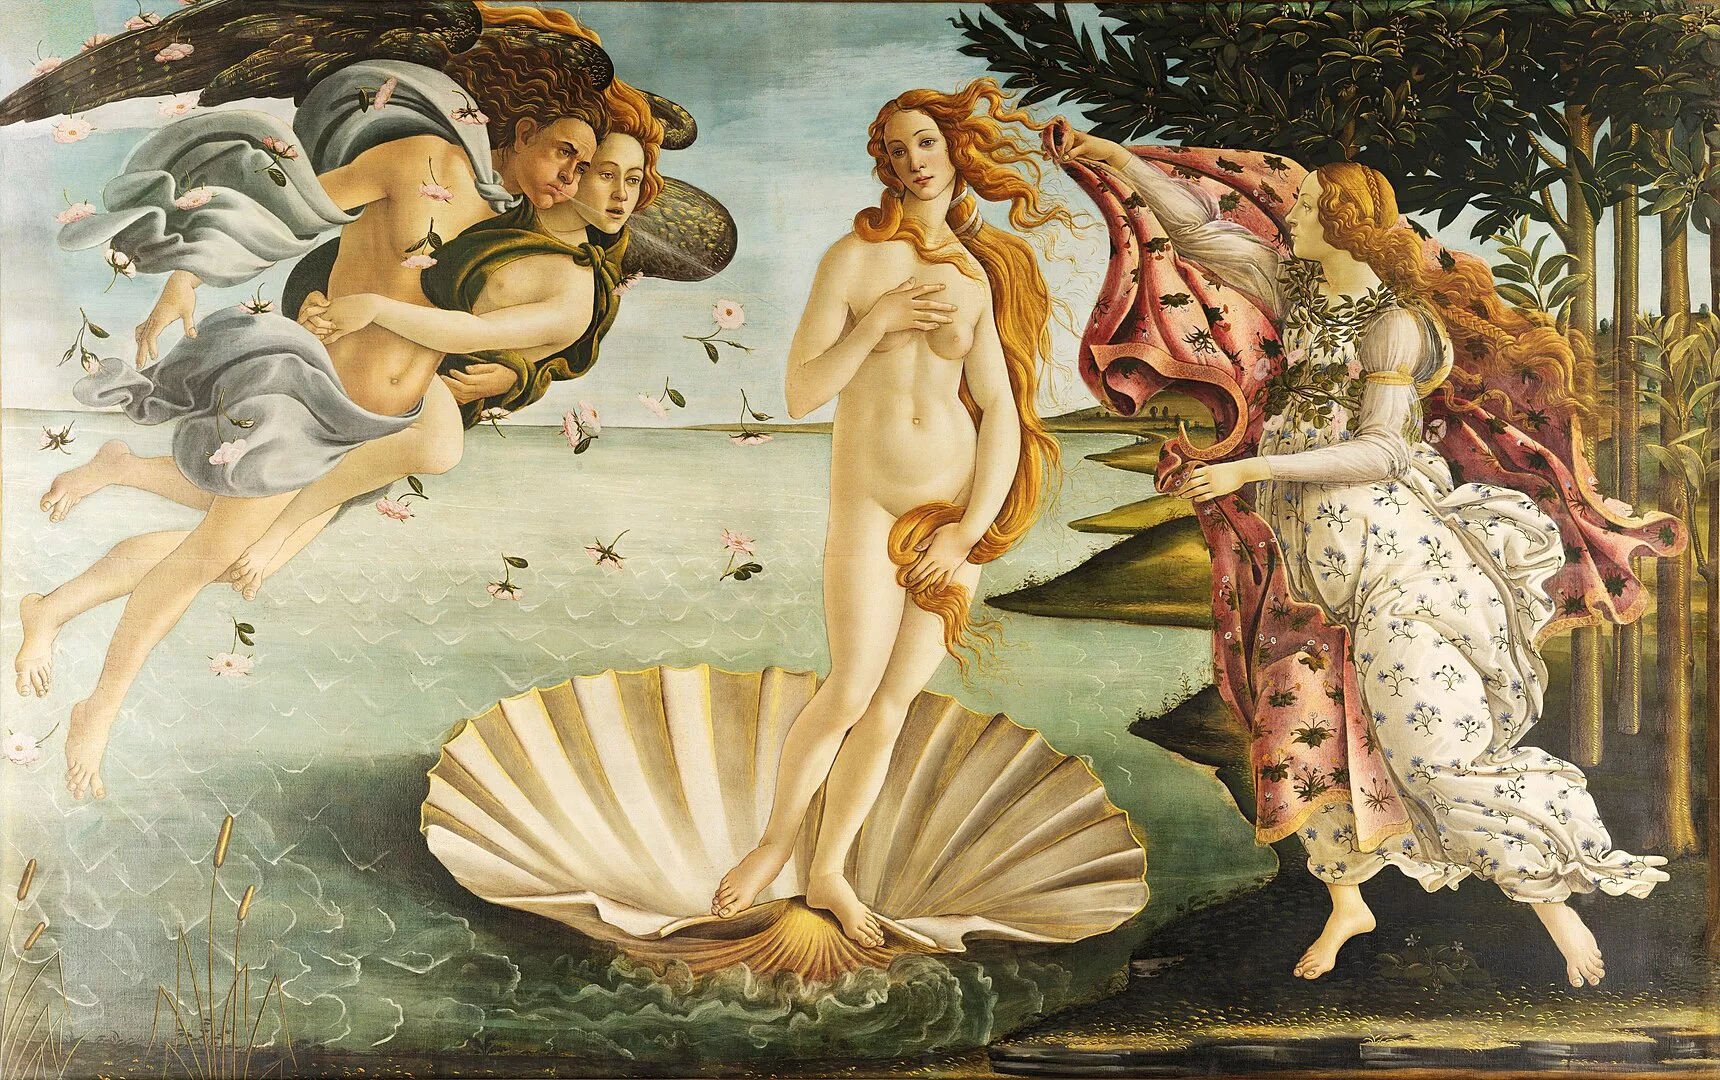 'El naixement de Venus', de Sandro Botticelli